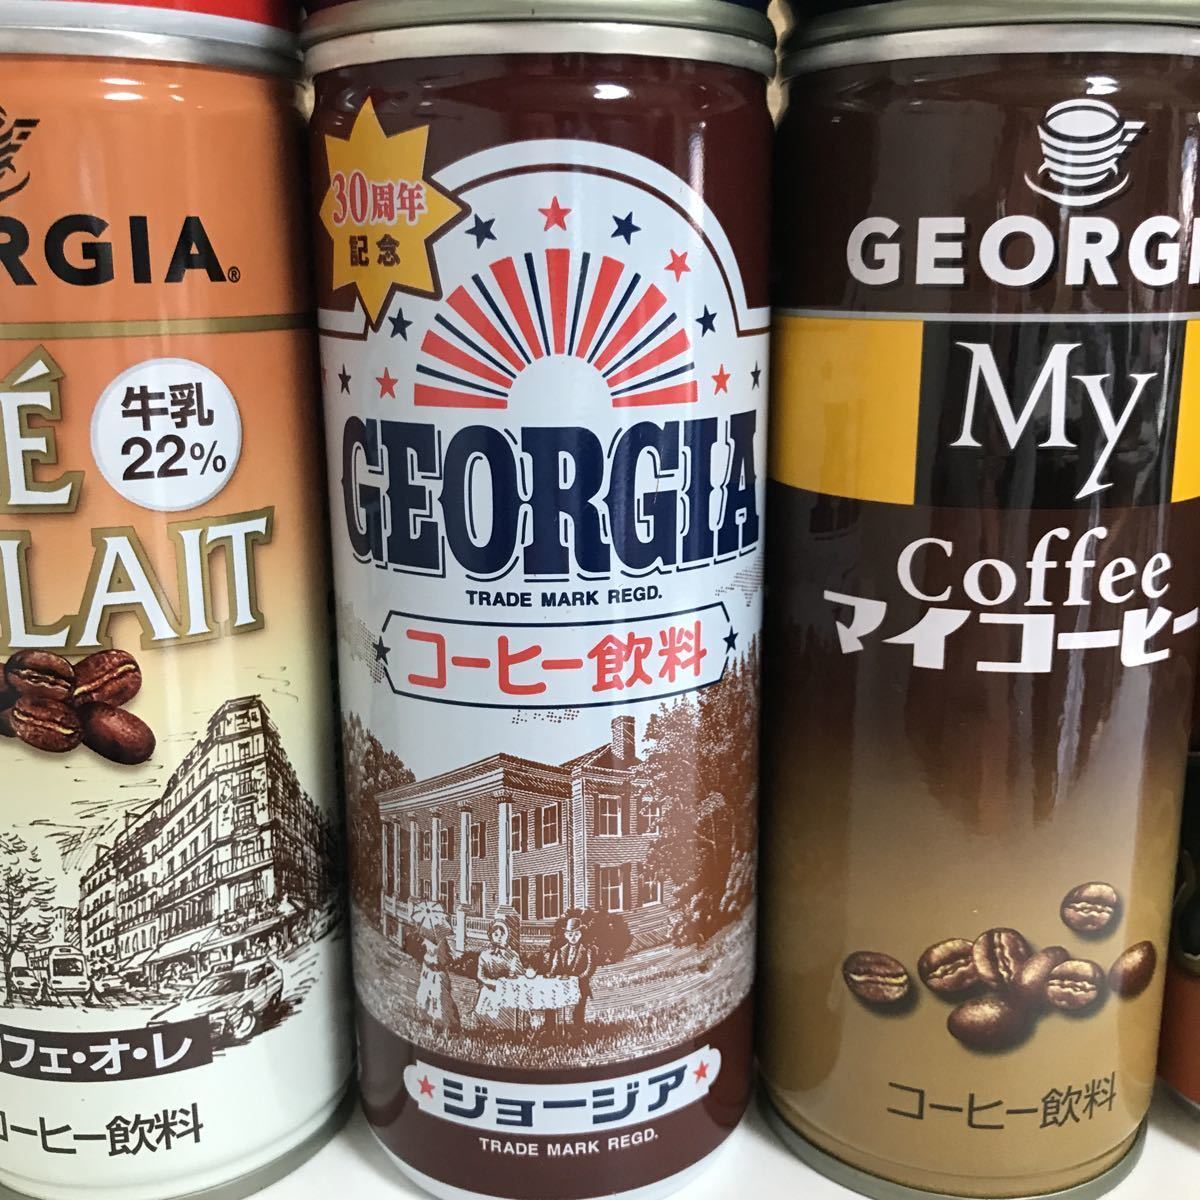 当時物 コカ・コーラ ジョージアコーヒーCOCA COLA GEORGIA COFFEE 1988年から2019年 コカコーラ 平成レトロ 期間限定缶 地域限定缶_画像3